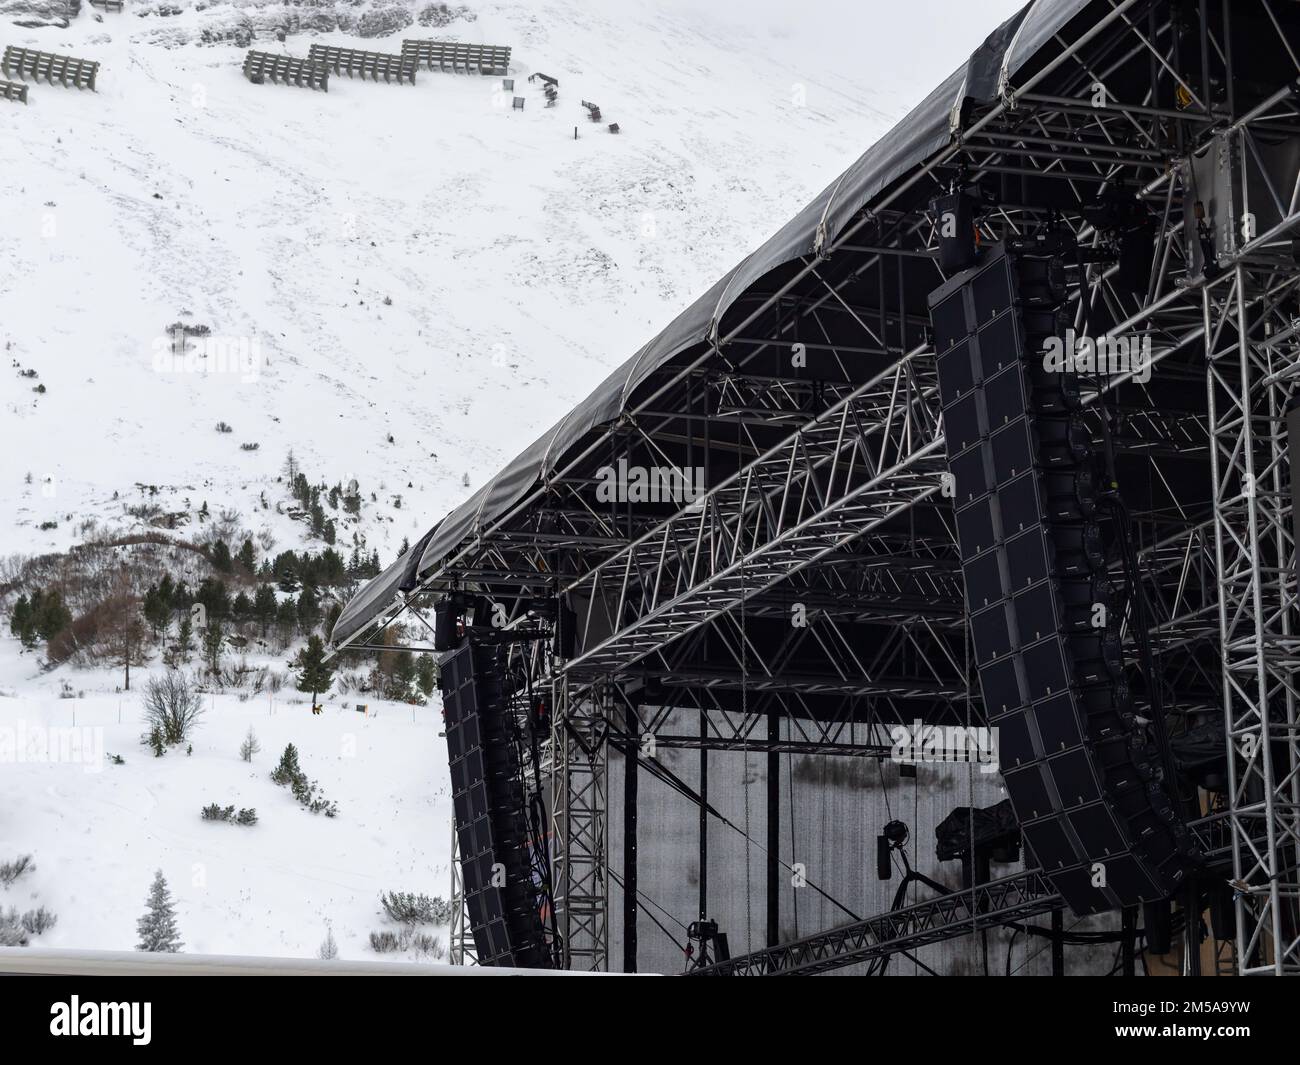 Bühnenausrüstung für ein Freiluftkonzert im Skigebiet in der Wintersaison. Truss-Rahmenkonstruktion mit lauten Lautsprechern und Beleuchtungseinrichtungen. Stockfoto